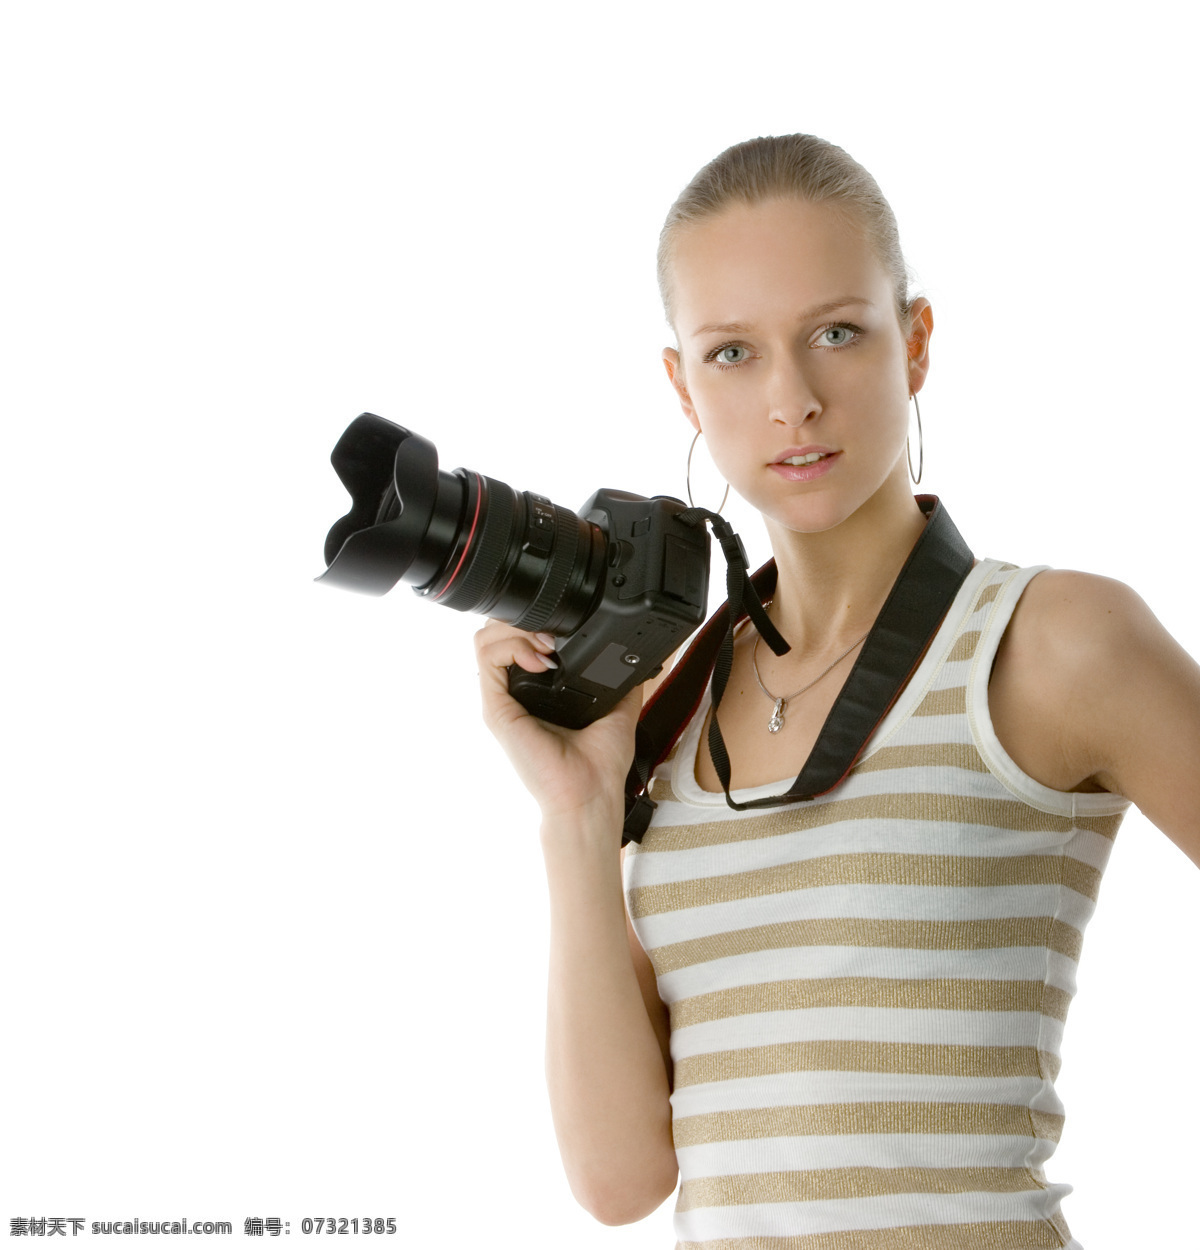 美女 摄影师 女性 性感美女 美女模特 时尚美女 美女写真 摄影图 单反相机 数码相机 照相机 美女图片 人物图片